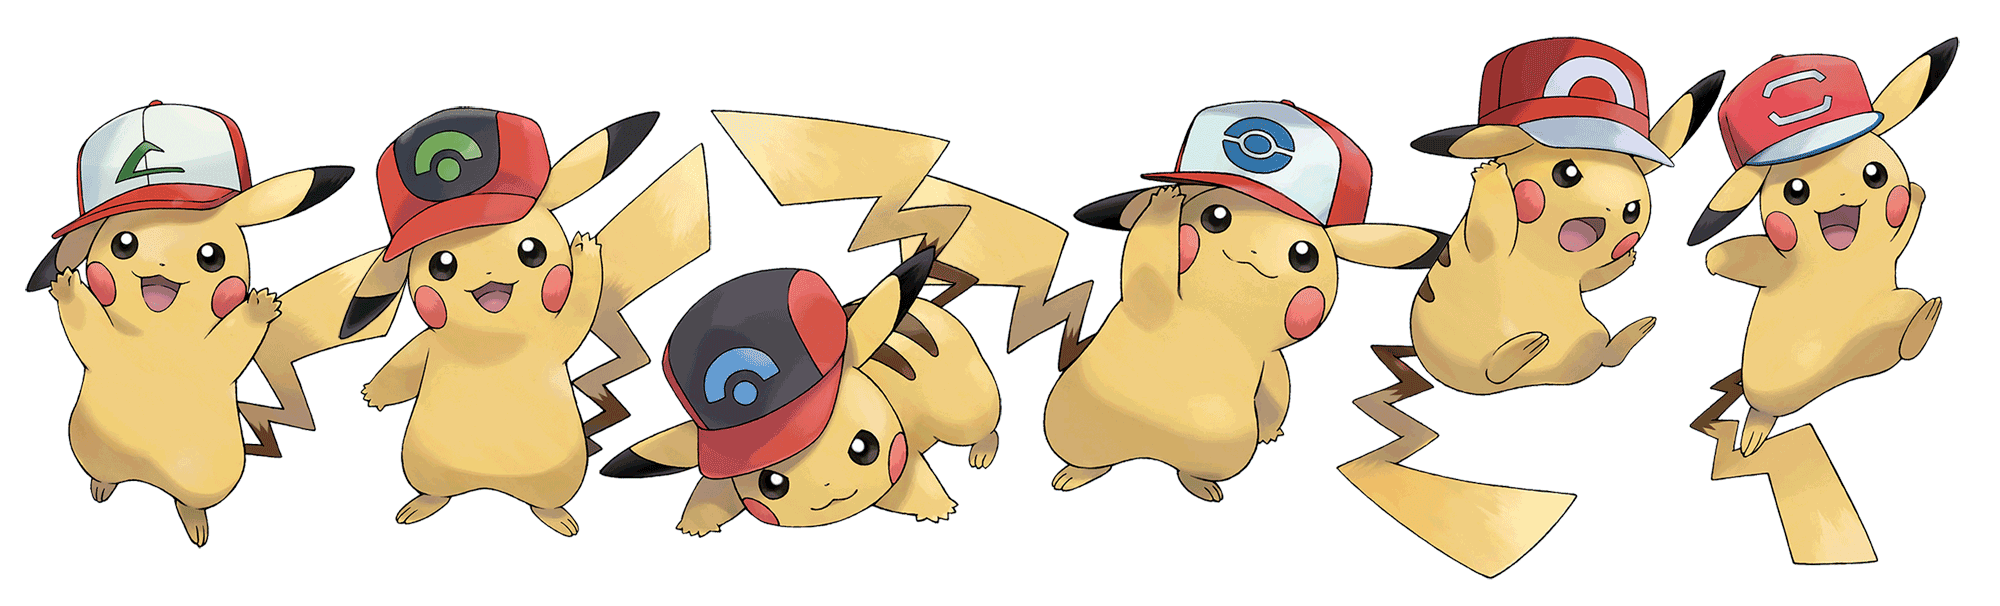 Ash's Hat Pikachu